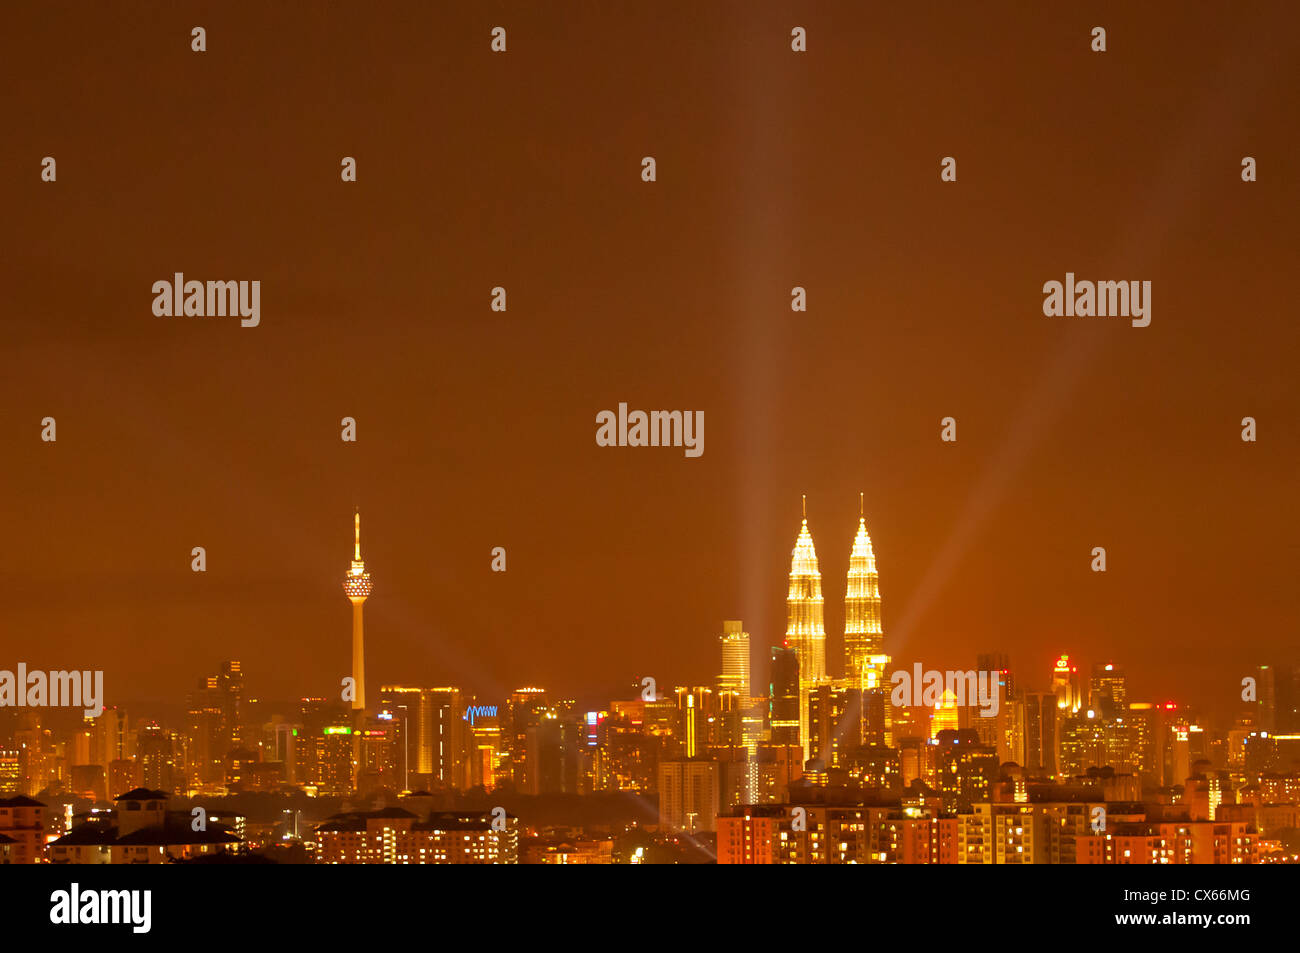 Kuala Lumpur, Malaisie skyline avec les Tours Petronas et de la KL Tower at night / soirée. Banque D'Images